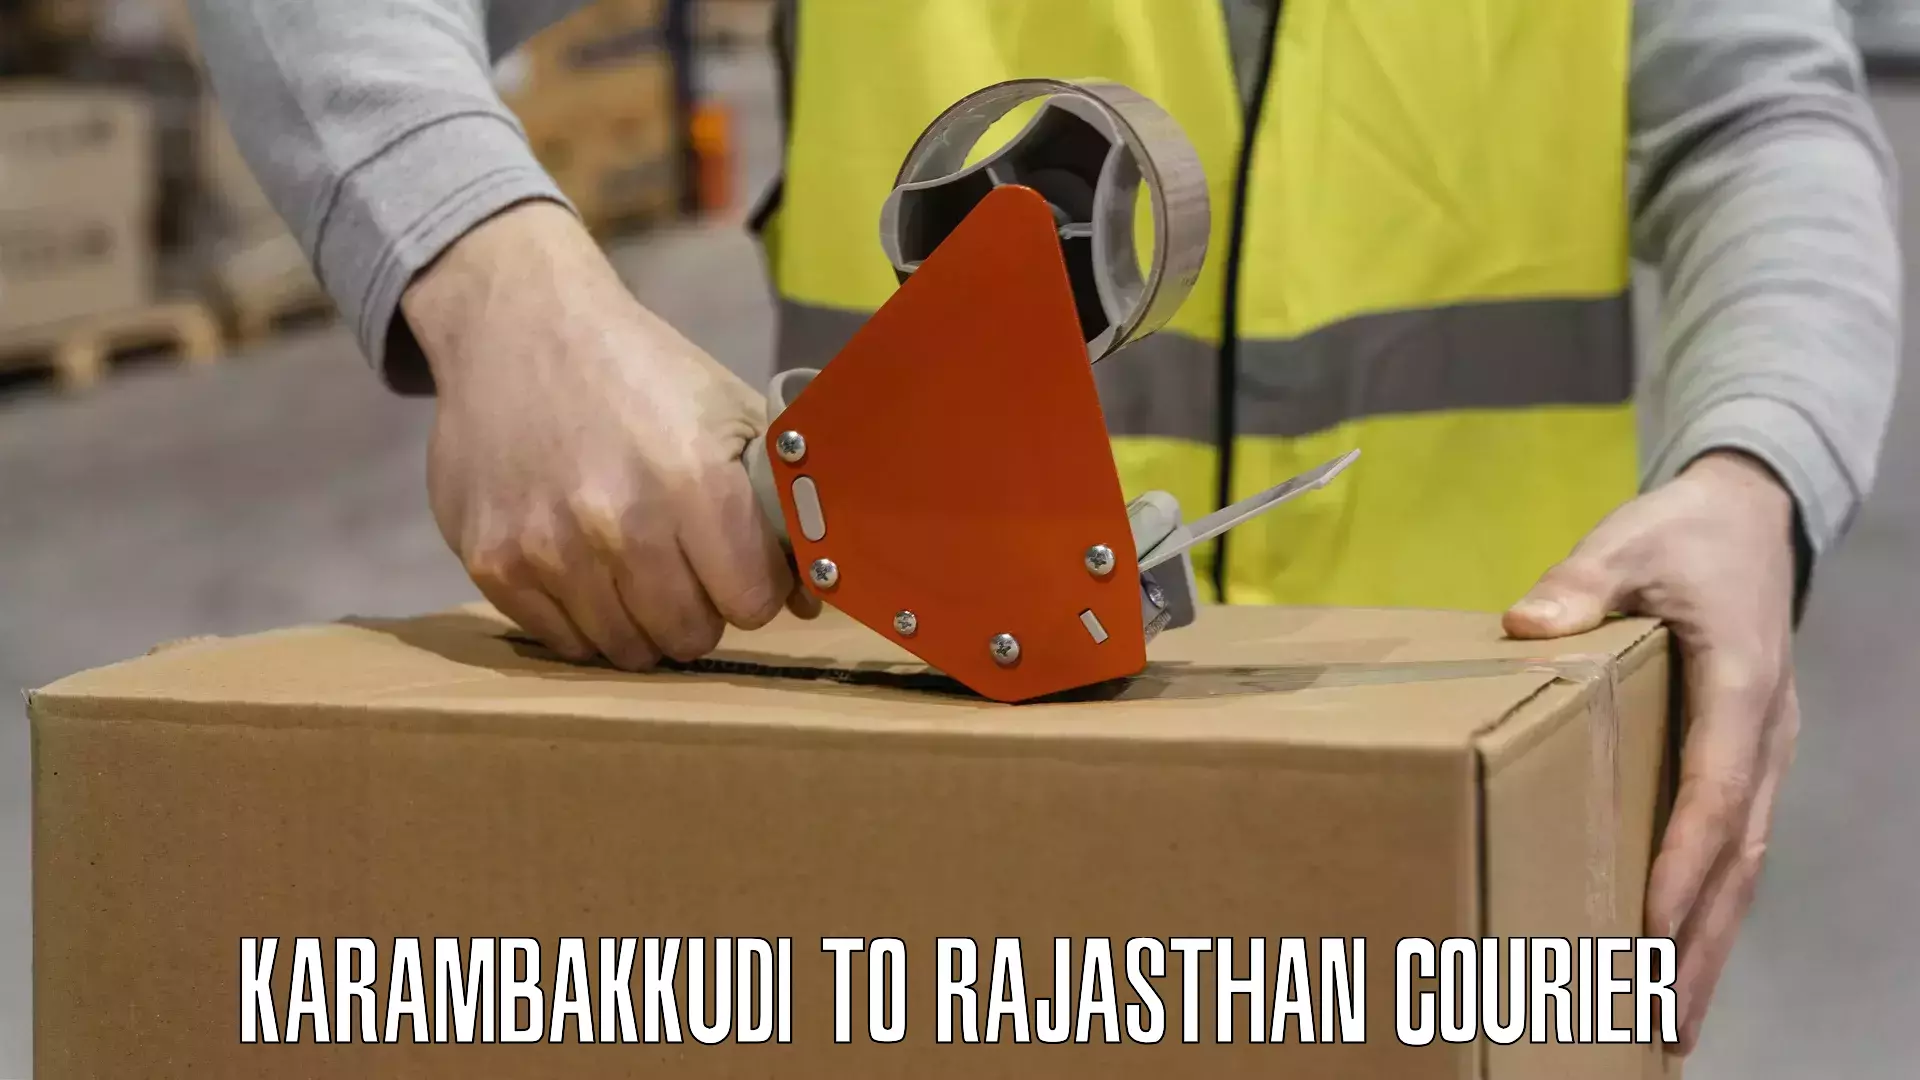 24/7 courier service Karambakkudi to Rajasthan